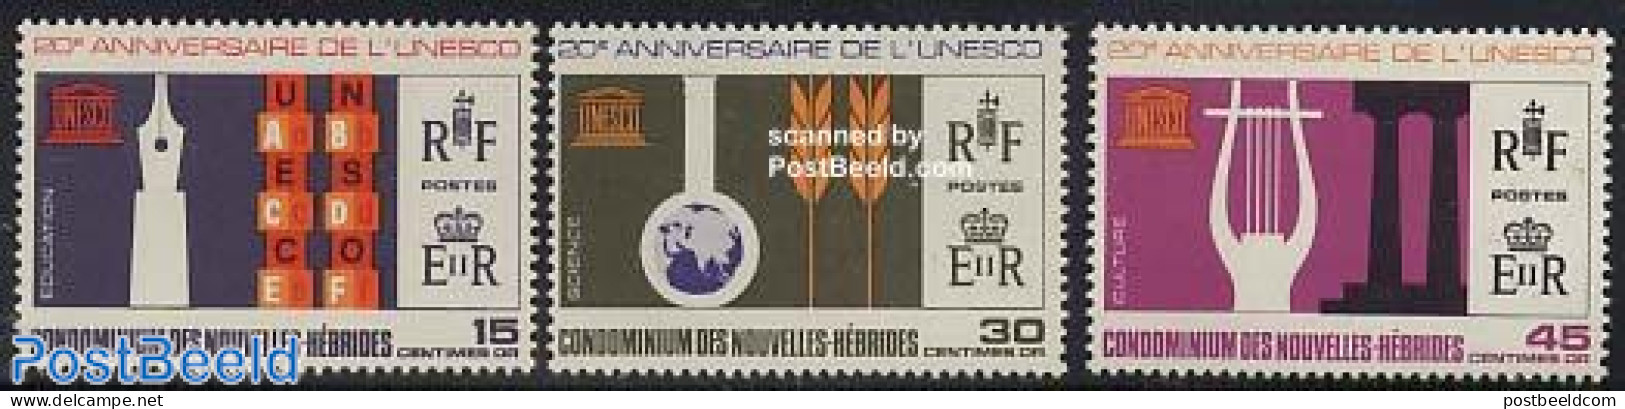 New Hebrides 1966 20 Years UNESCO 3v F, Mint NH, History - Unesco - Nuovi